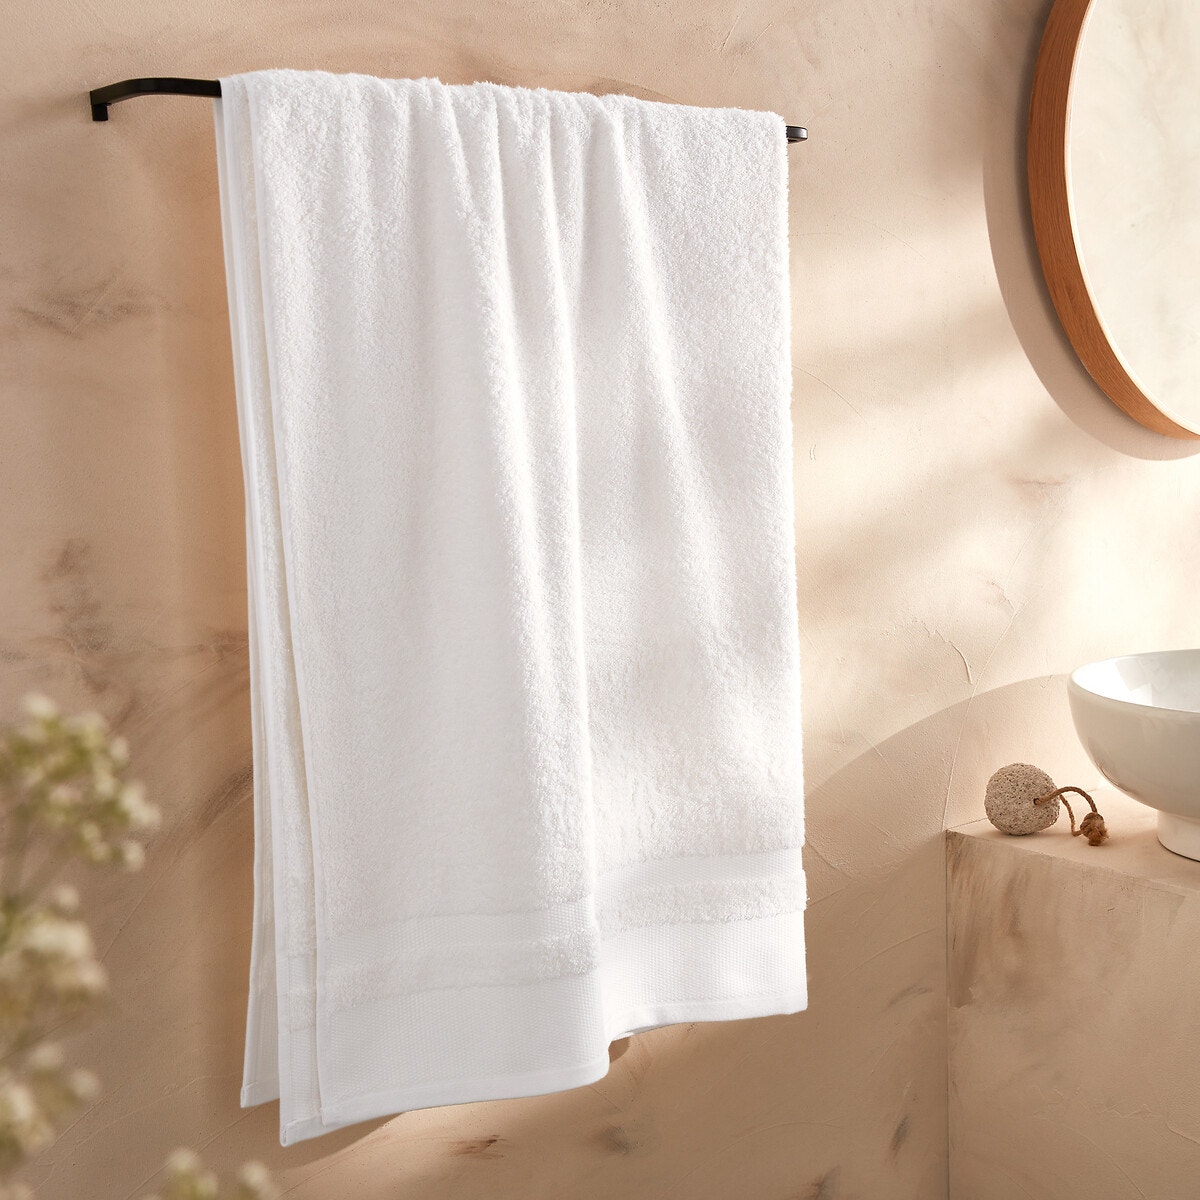 Σπίτι > Λευκά είδη > Μπάνιο > Πετσέτες μπάνιου Μάξι πετσέτα μπάνιου από αιγυπτιακό βαμβάκι 86x150 cm